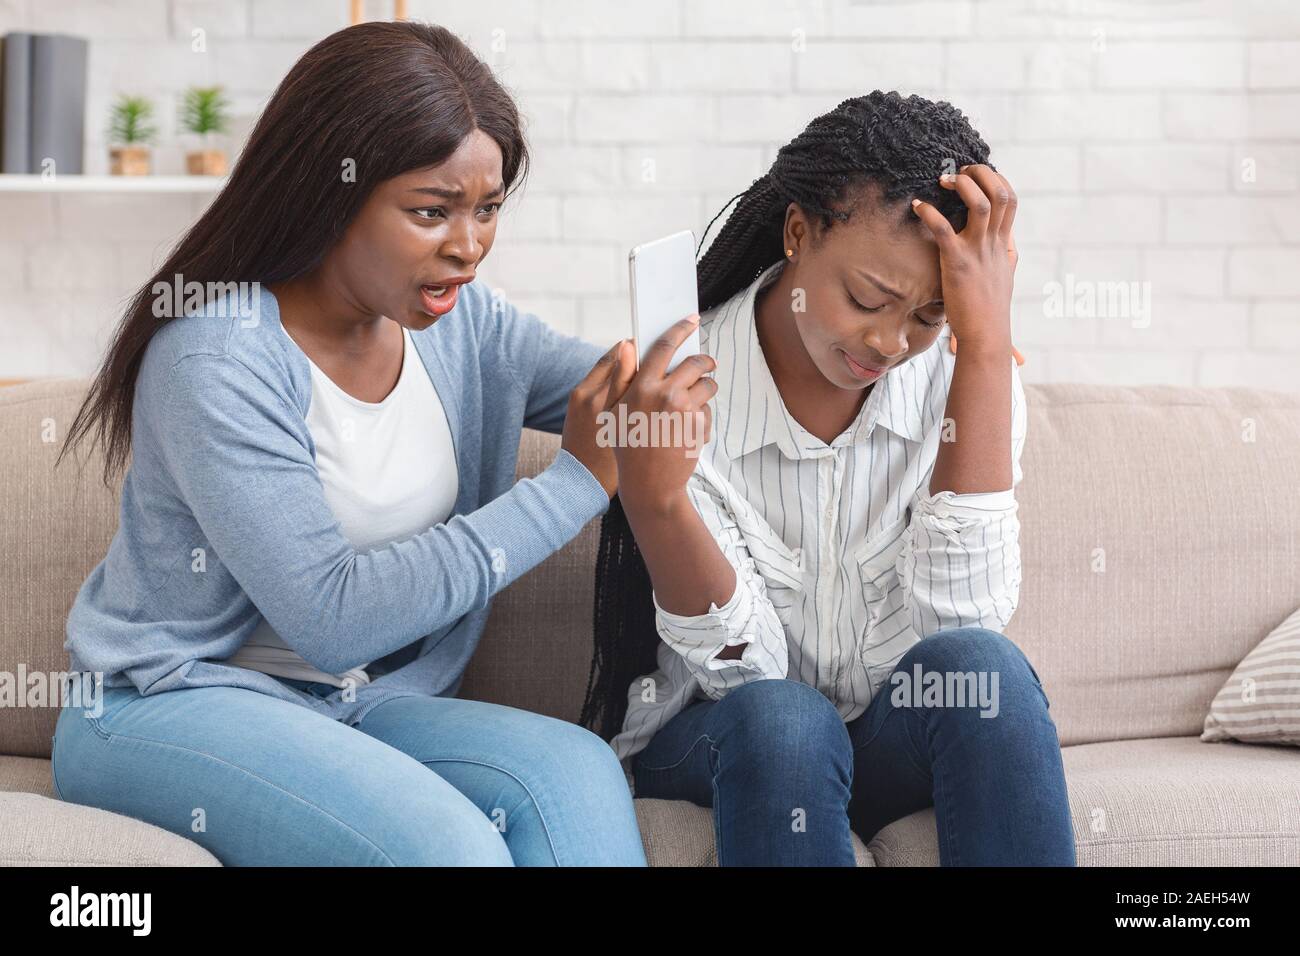 Sconvolto ragazza afro mostra Smartphone con cattivo messaggio alla sua amica Foto Stock